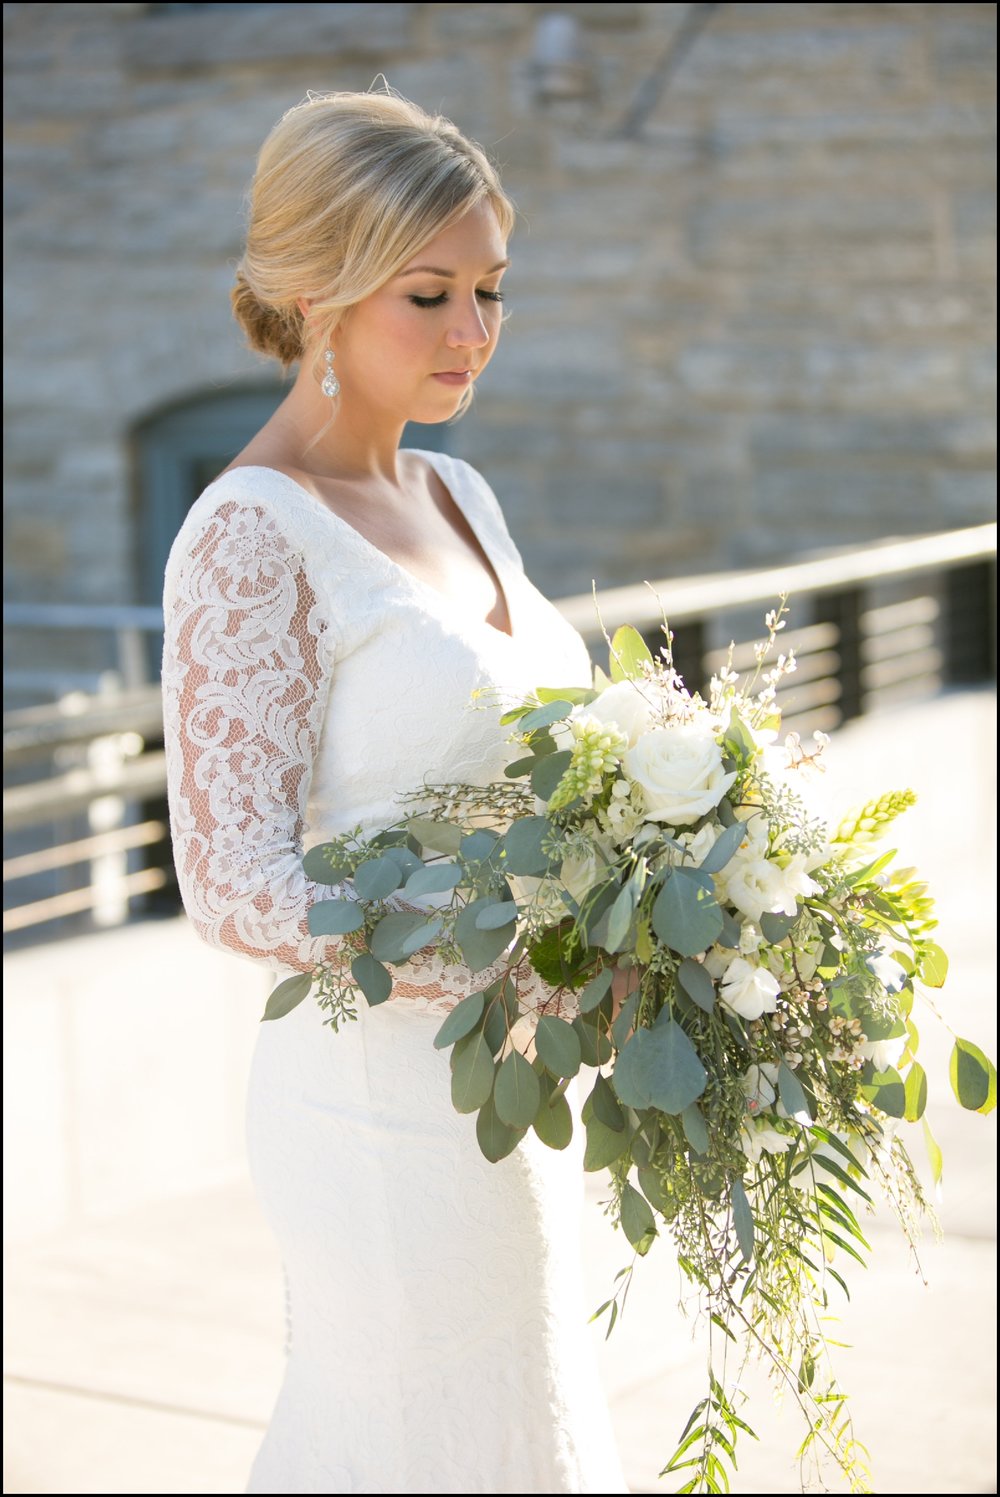  Bride holding wedding bouquet 